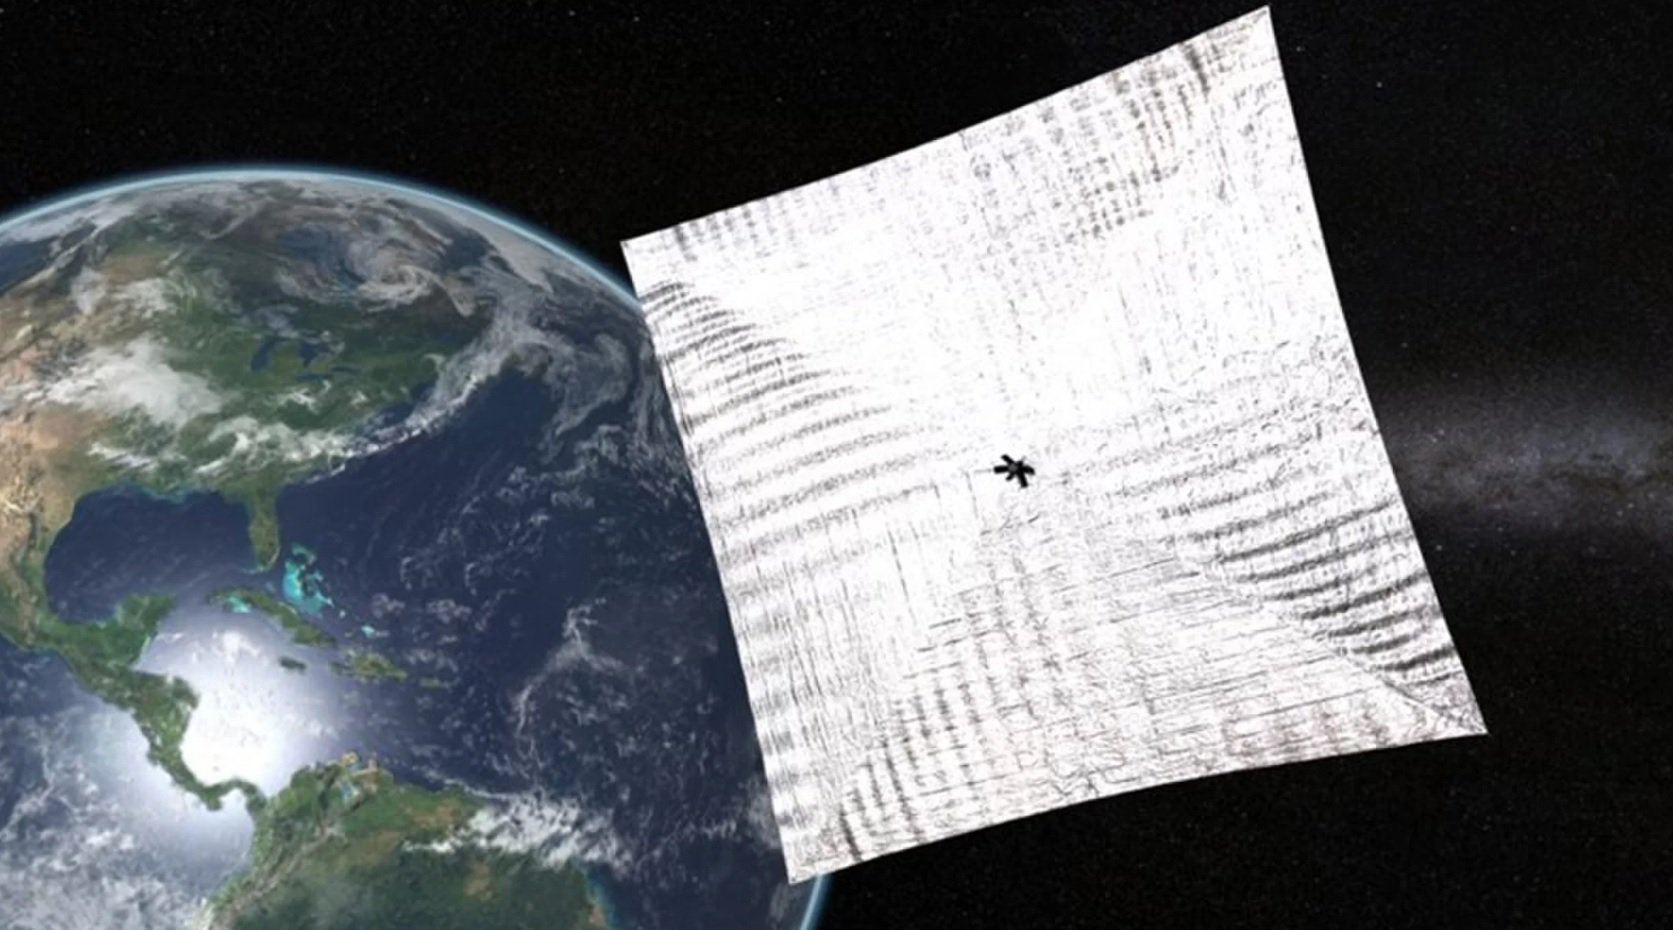 O lançamento de velas solares 2.0 em órbita baixa da terra, realizada neste verão